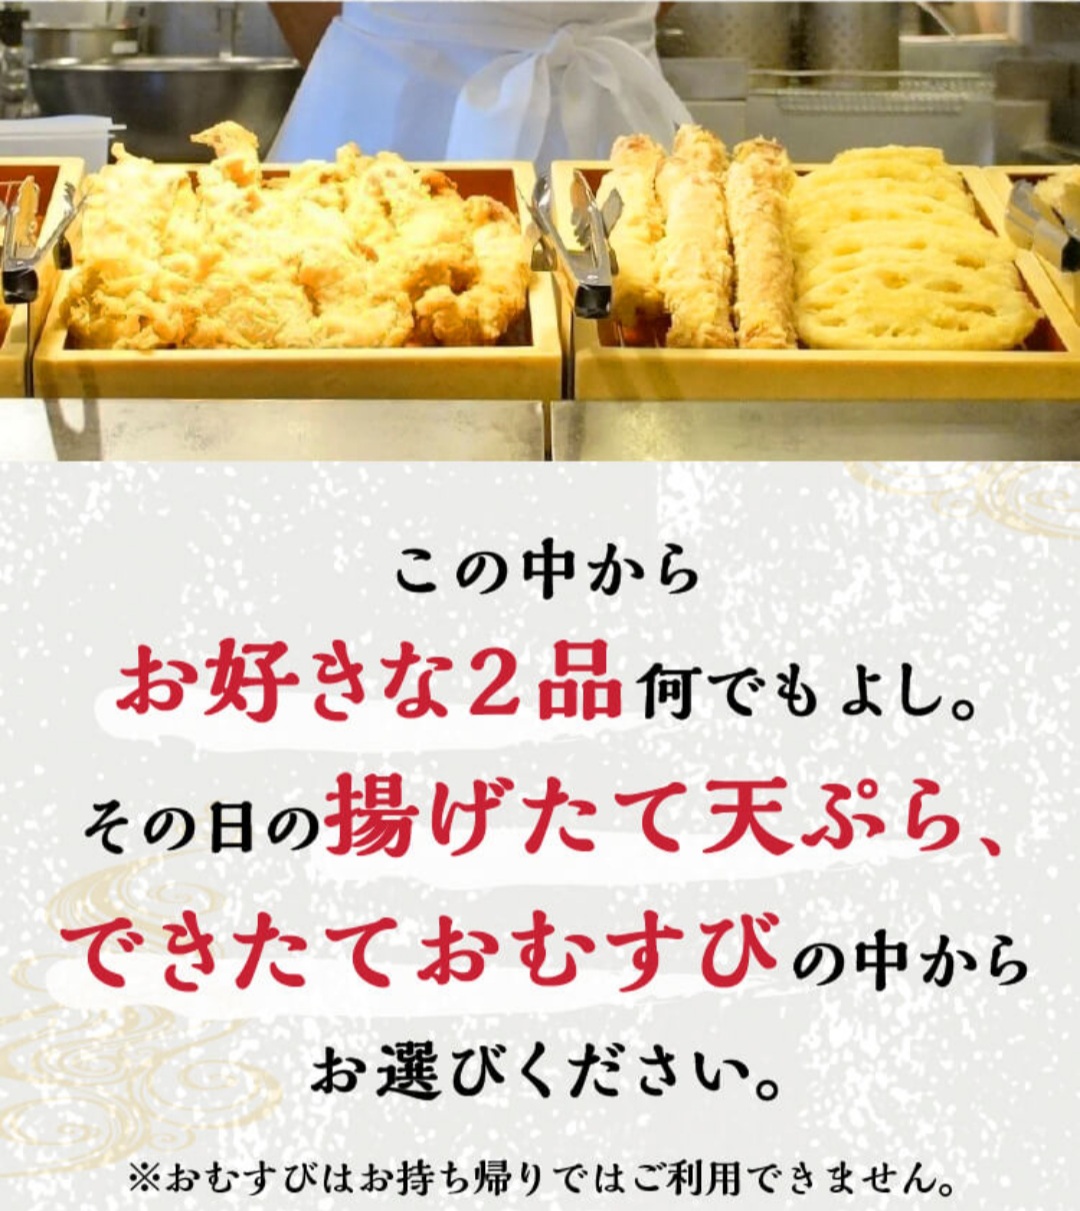 トリドール株主優待】丸亀製麺で最大210円もお得なランチセットを食べ 